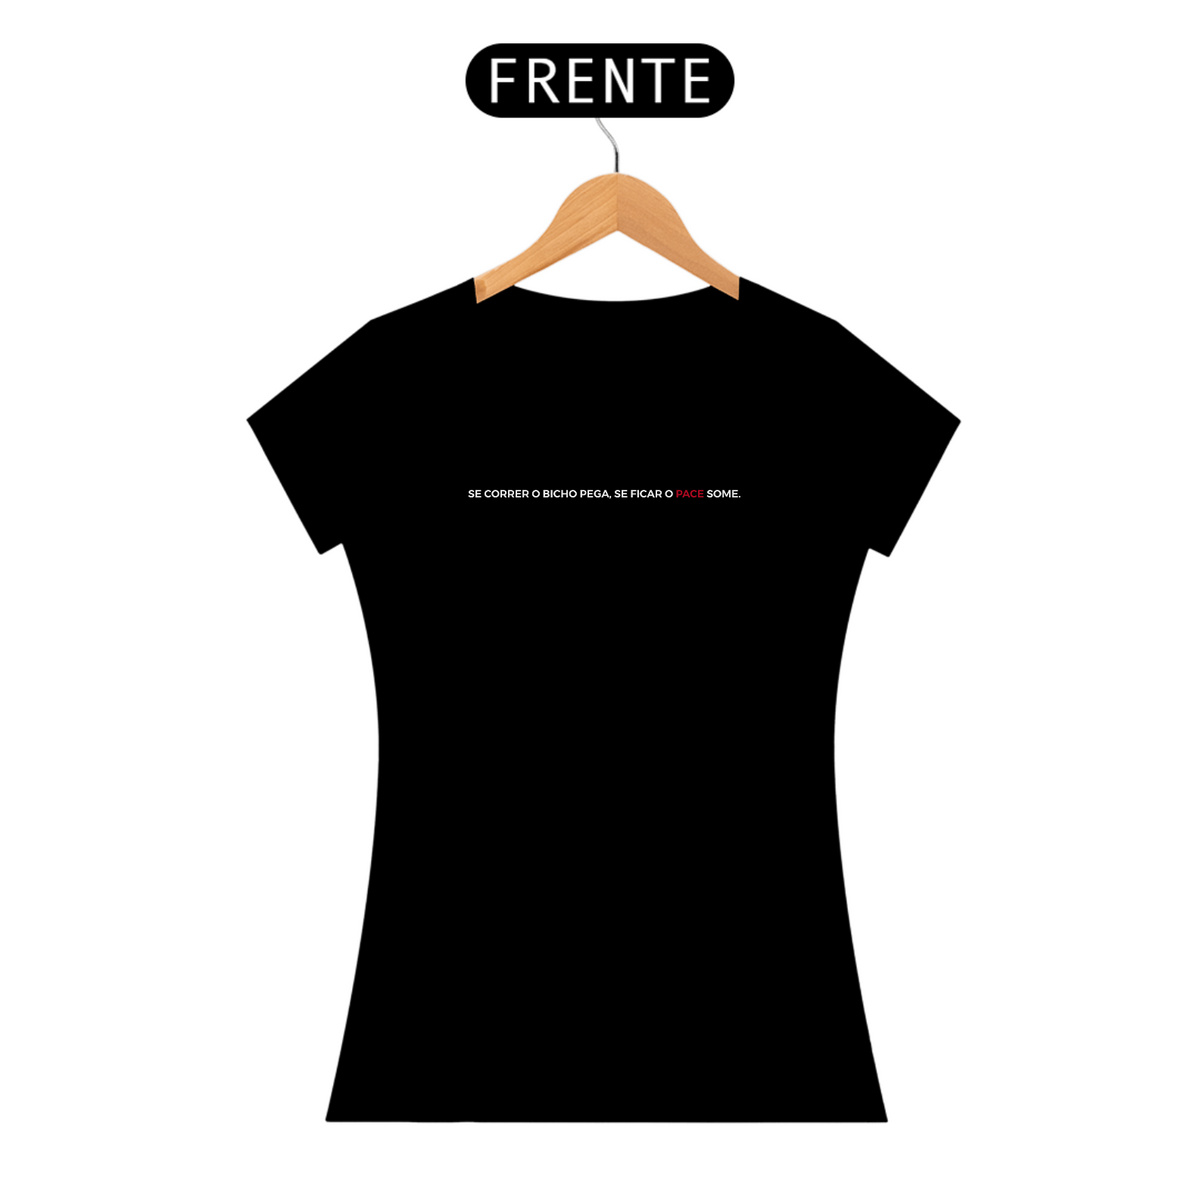 Nome do produto: Camiseta Feminina - Se correr o bicho pega se ficar o pace some